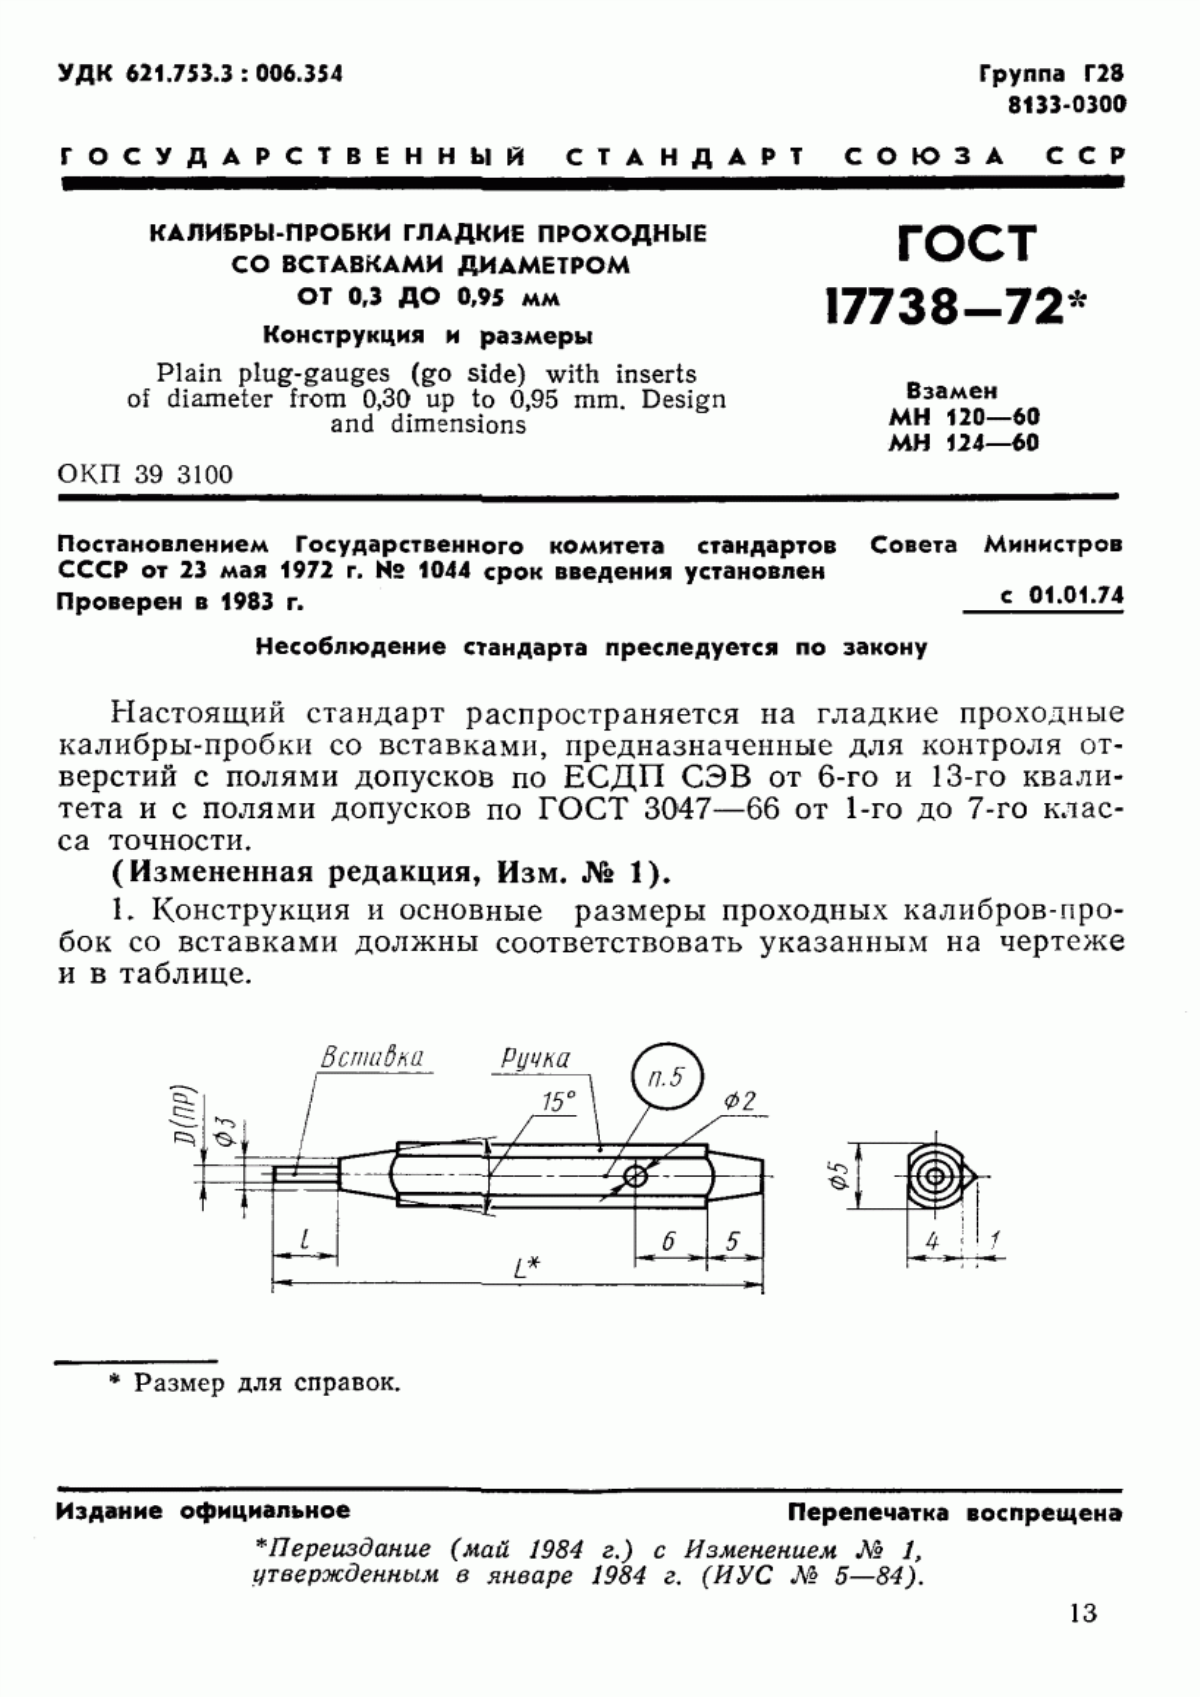 ГОСТ 17738-72 Калибры-пробки гладкие проходные со вставками диаметром от 0,3 до 0,95 мм. Конструкция и размеры